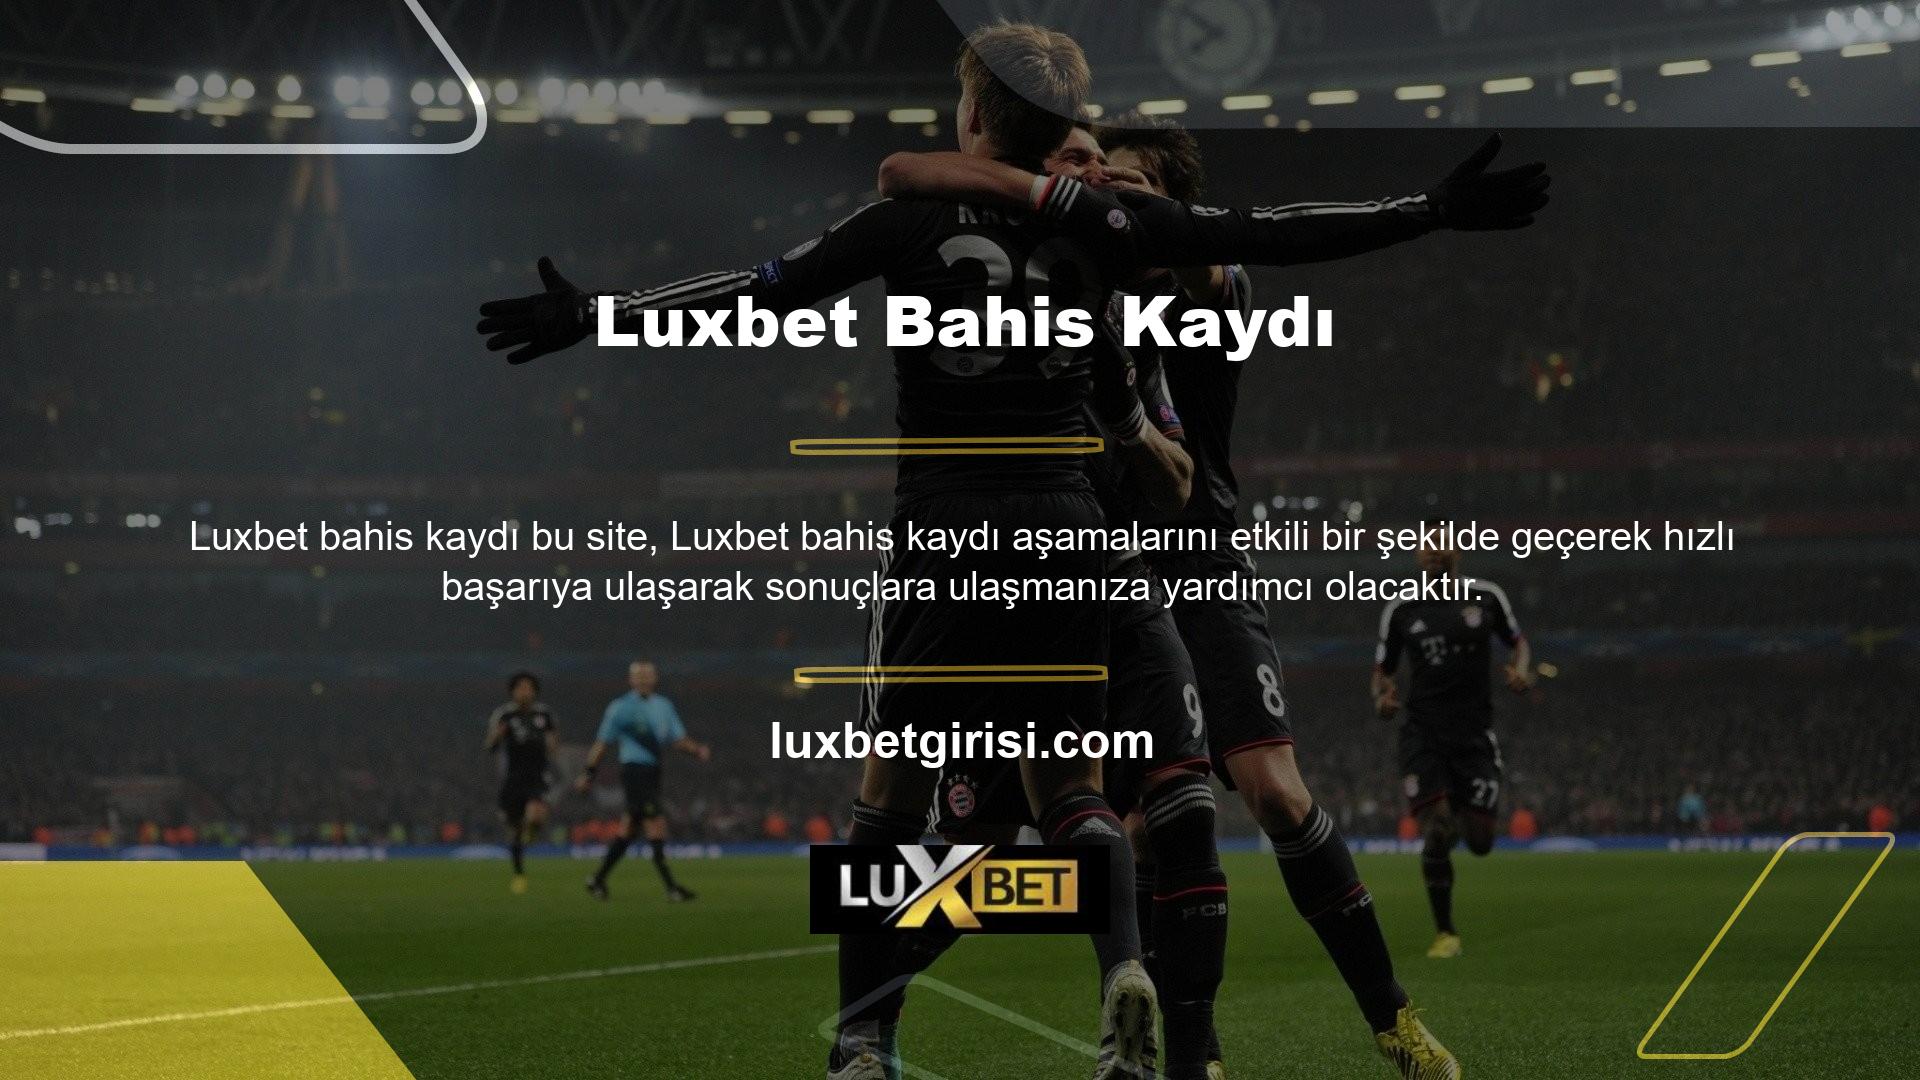 Başarılı bahsinizin adresi olarak görüntülenecek olan Luxbet web sitesine kolaylıkla ulaşabilirsiniz